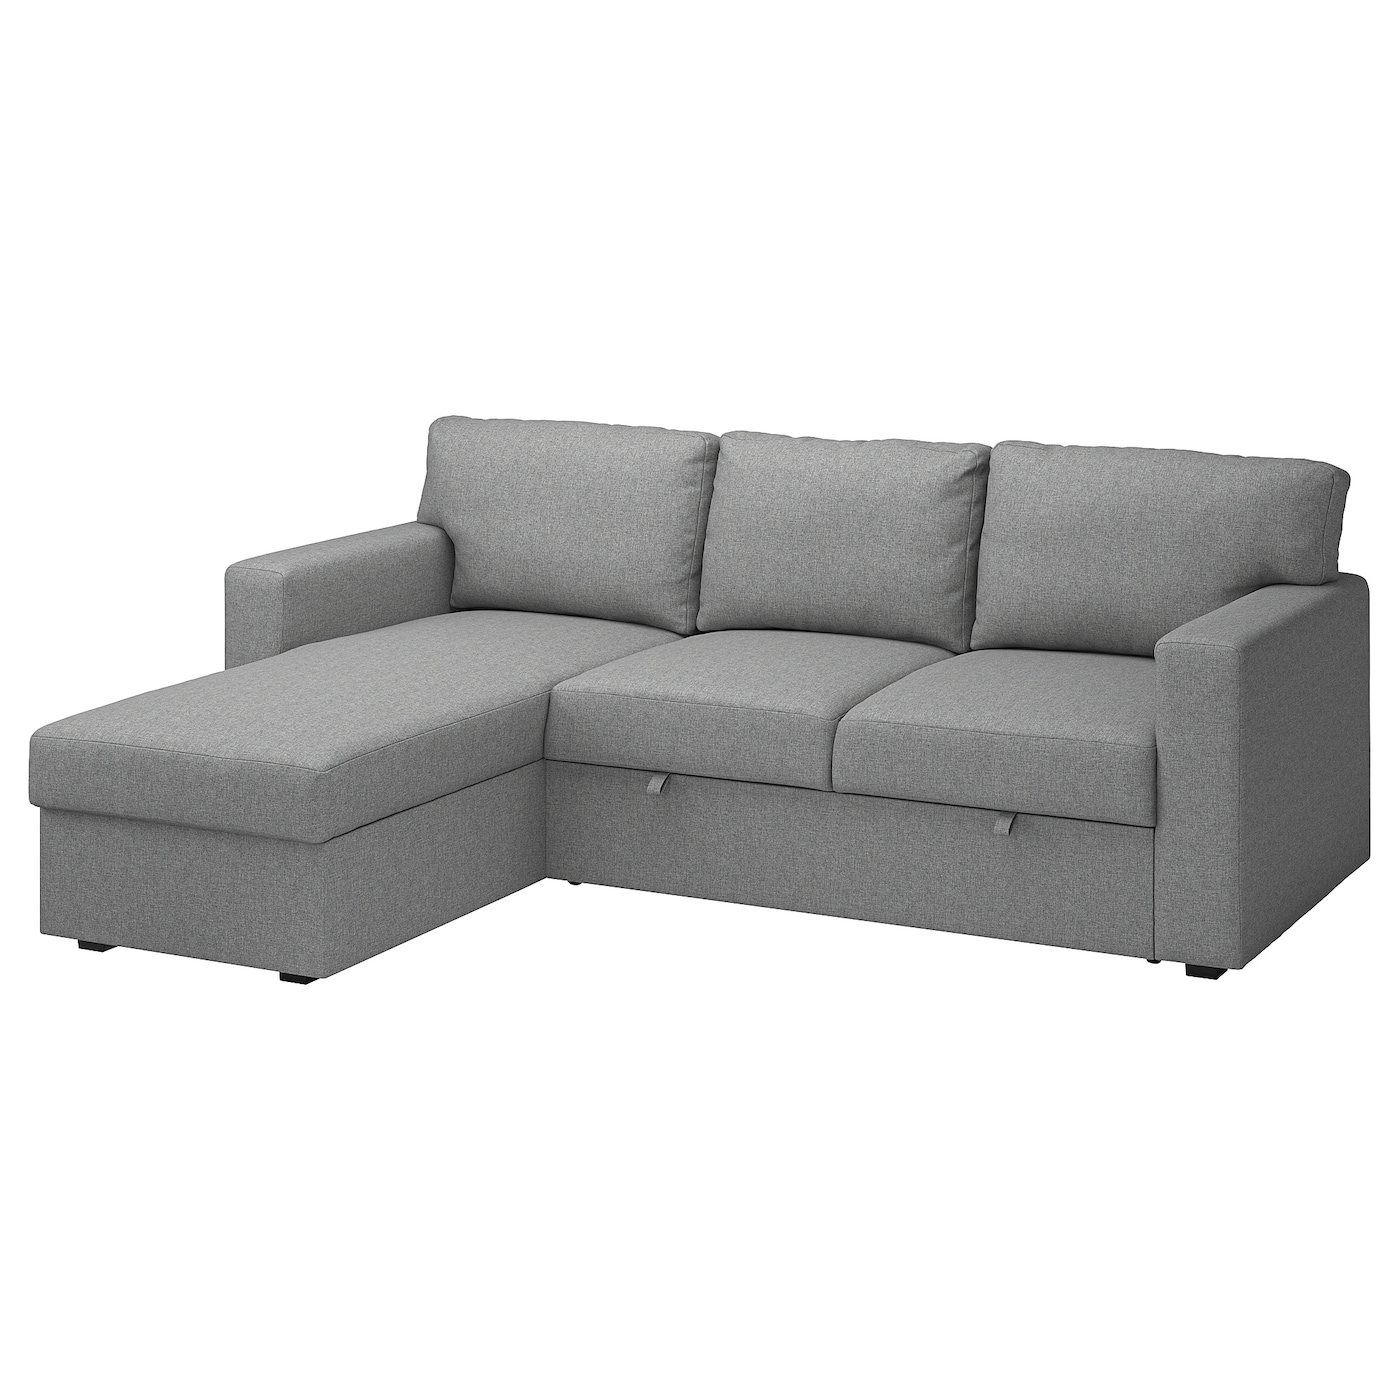 БОРСЛОВ 3-местный диван-кровать + диван, Тибблби бежевый/серый BÅRSLÖV IKEA